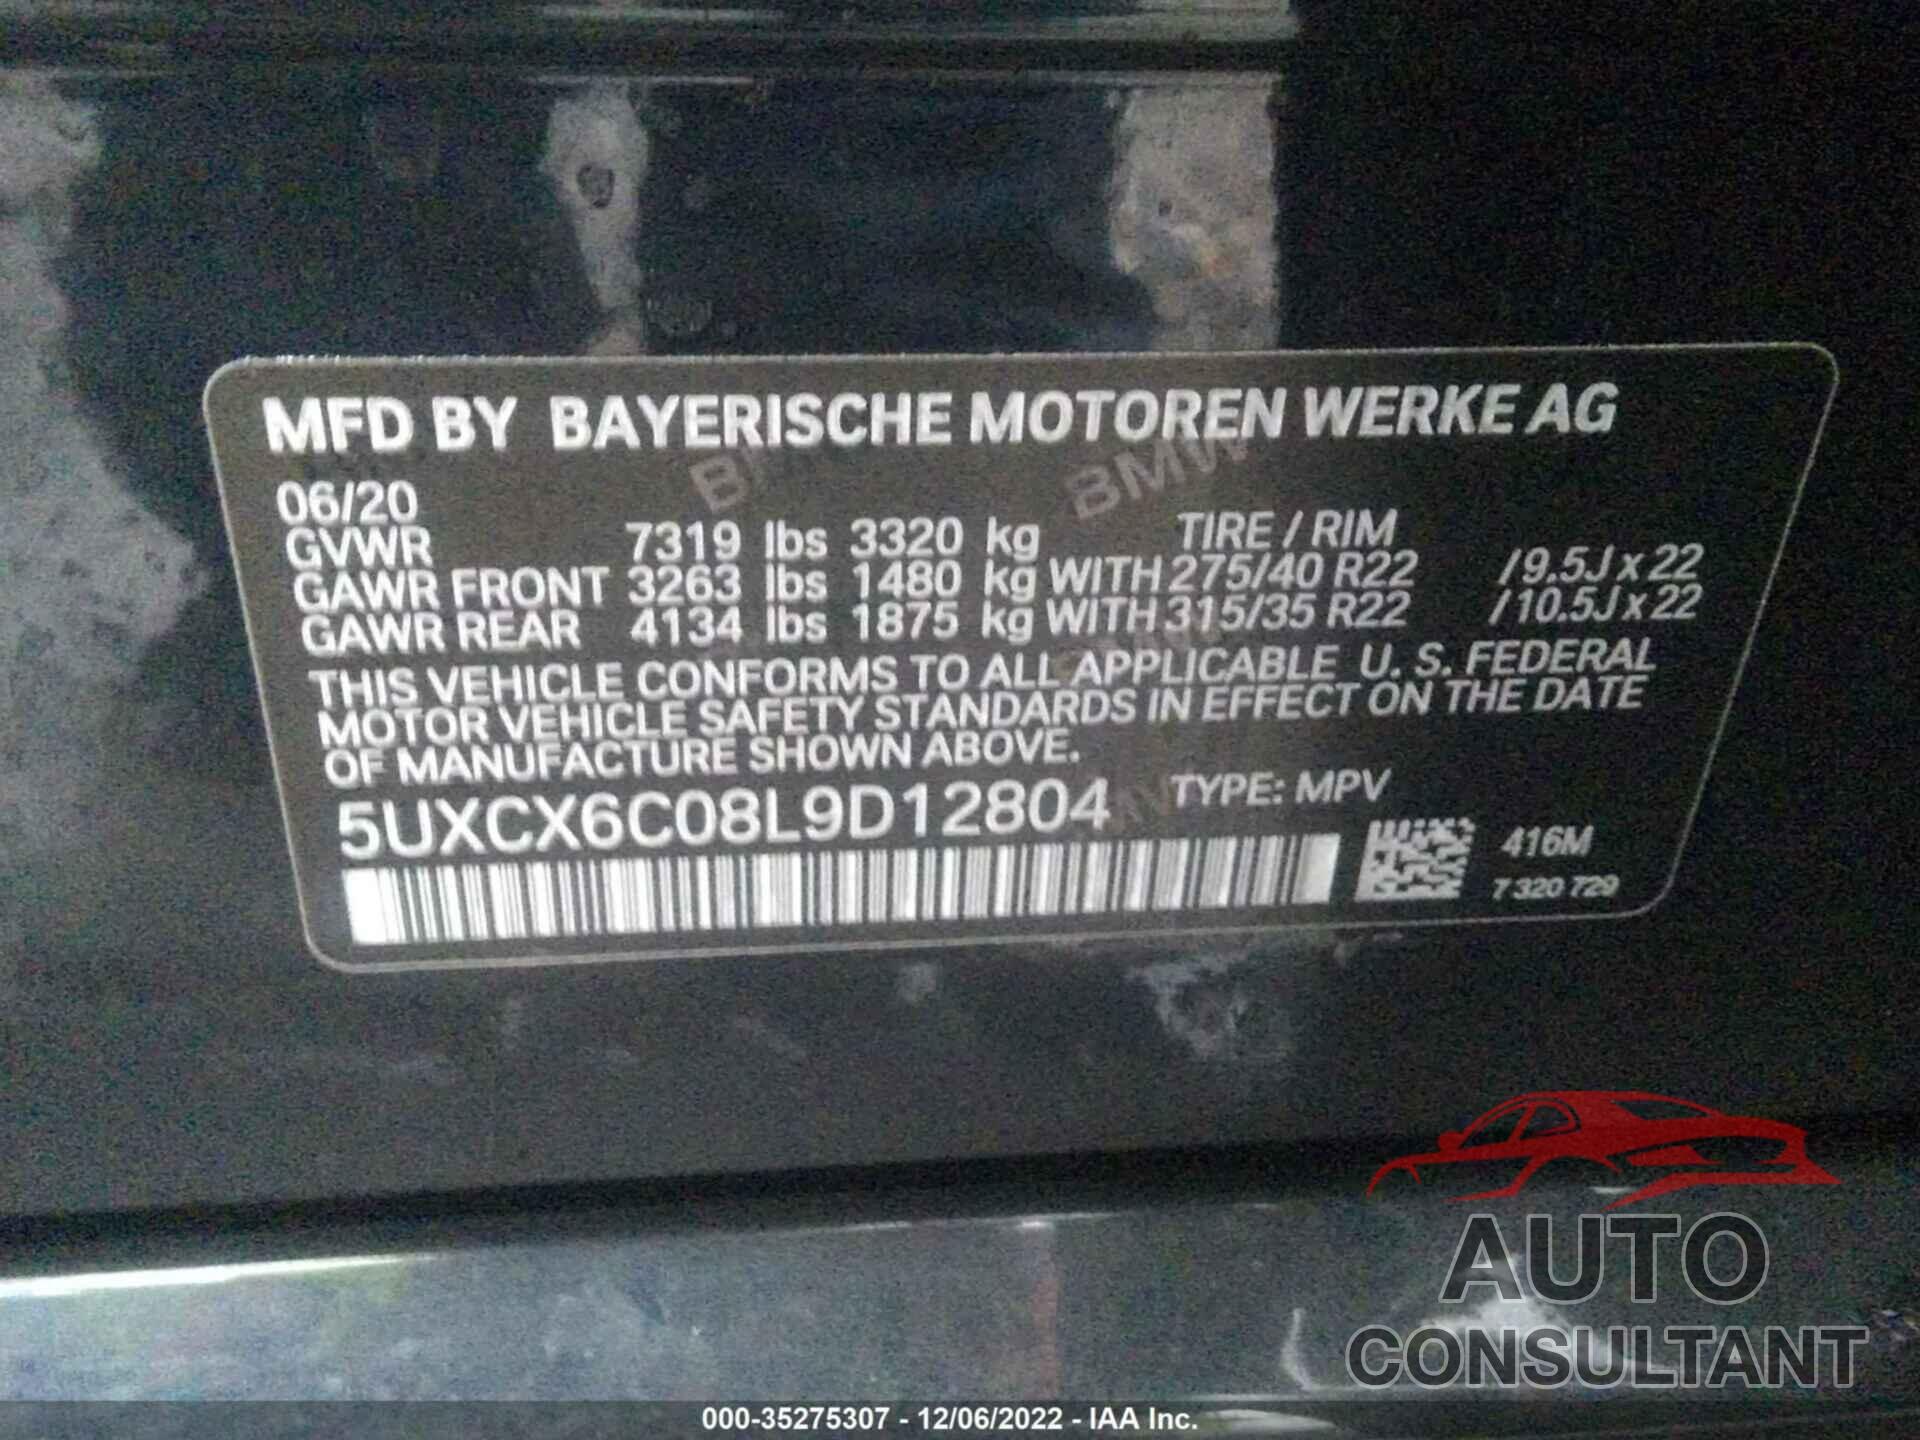 BMW X7 2020 - 5UXCX6C08L9D12804